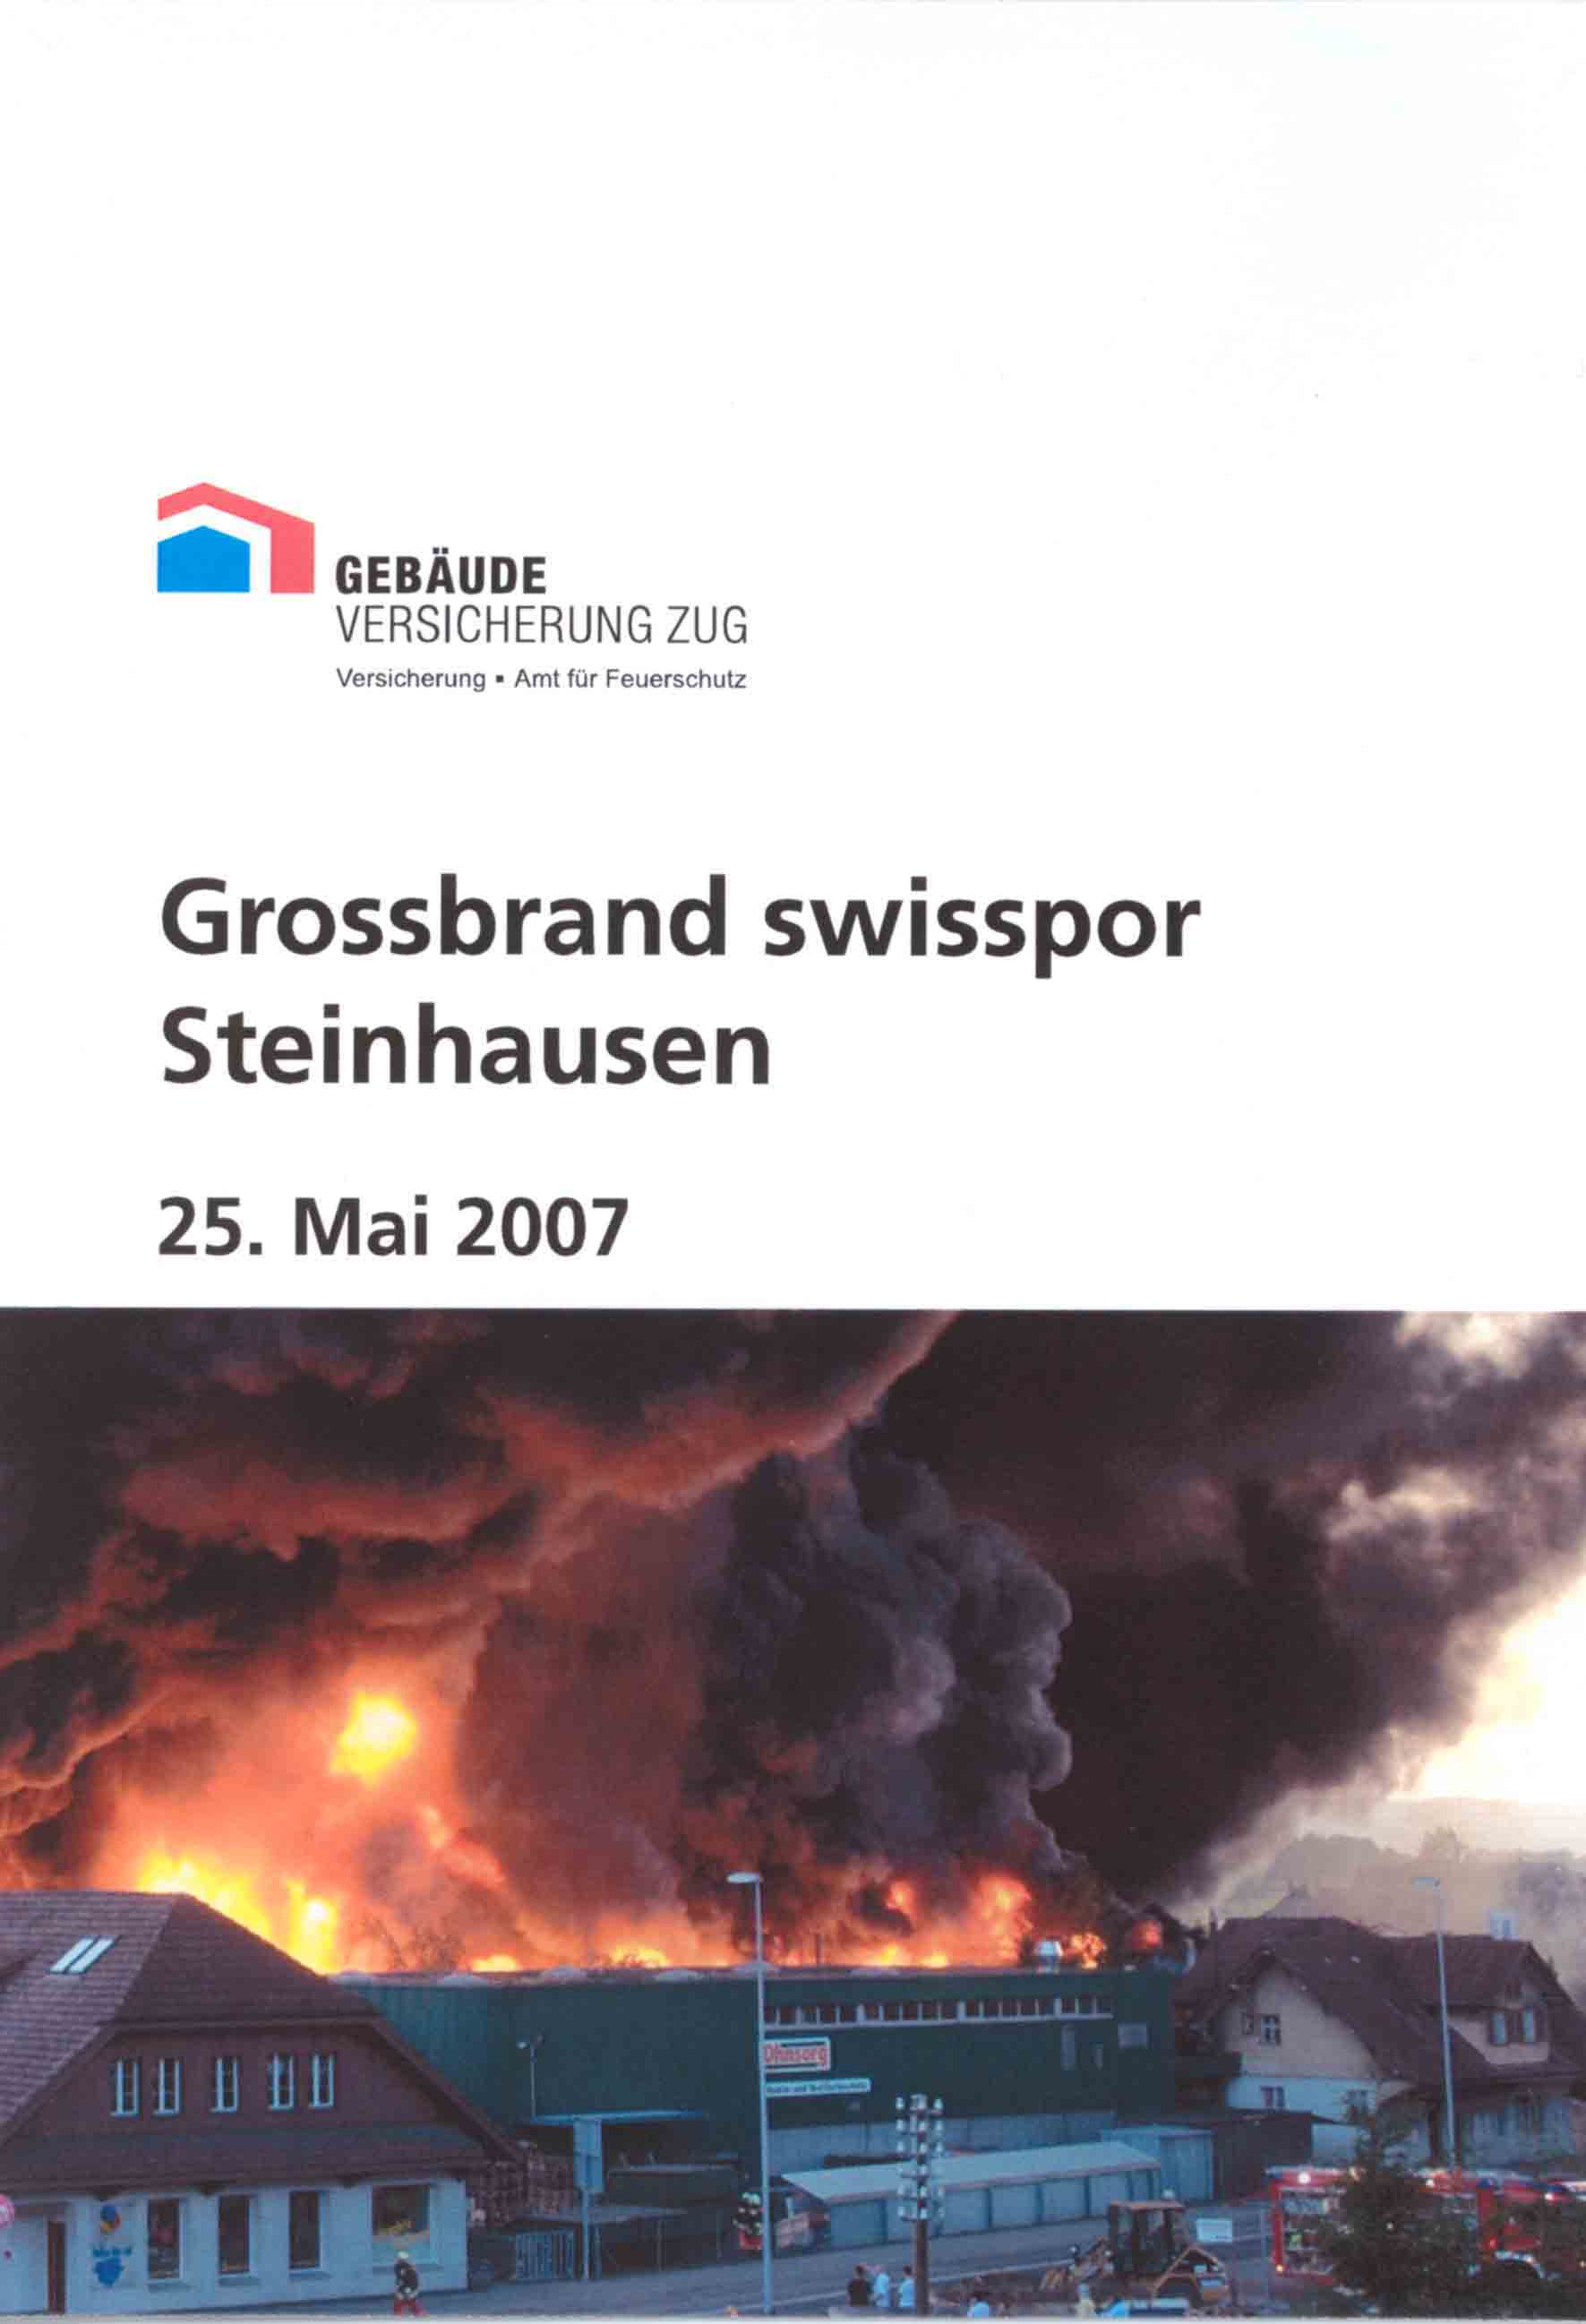 Die von appunto konzipierte DVD dokumentiert die Löscharbeiten des swisspor-Brandes in Steinhausen